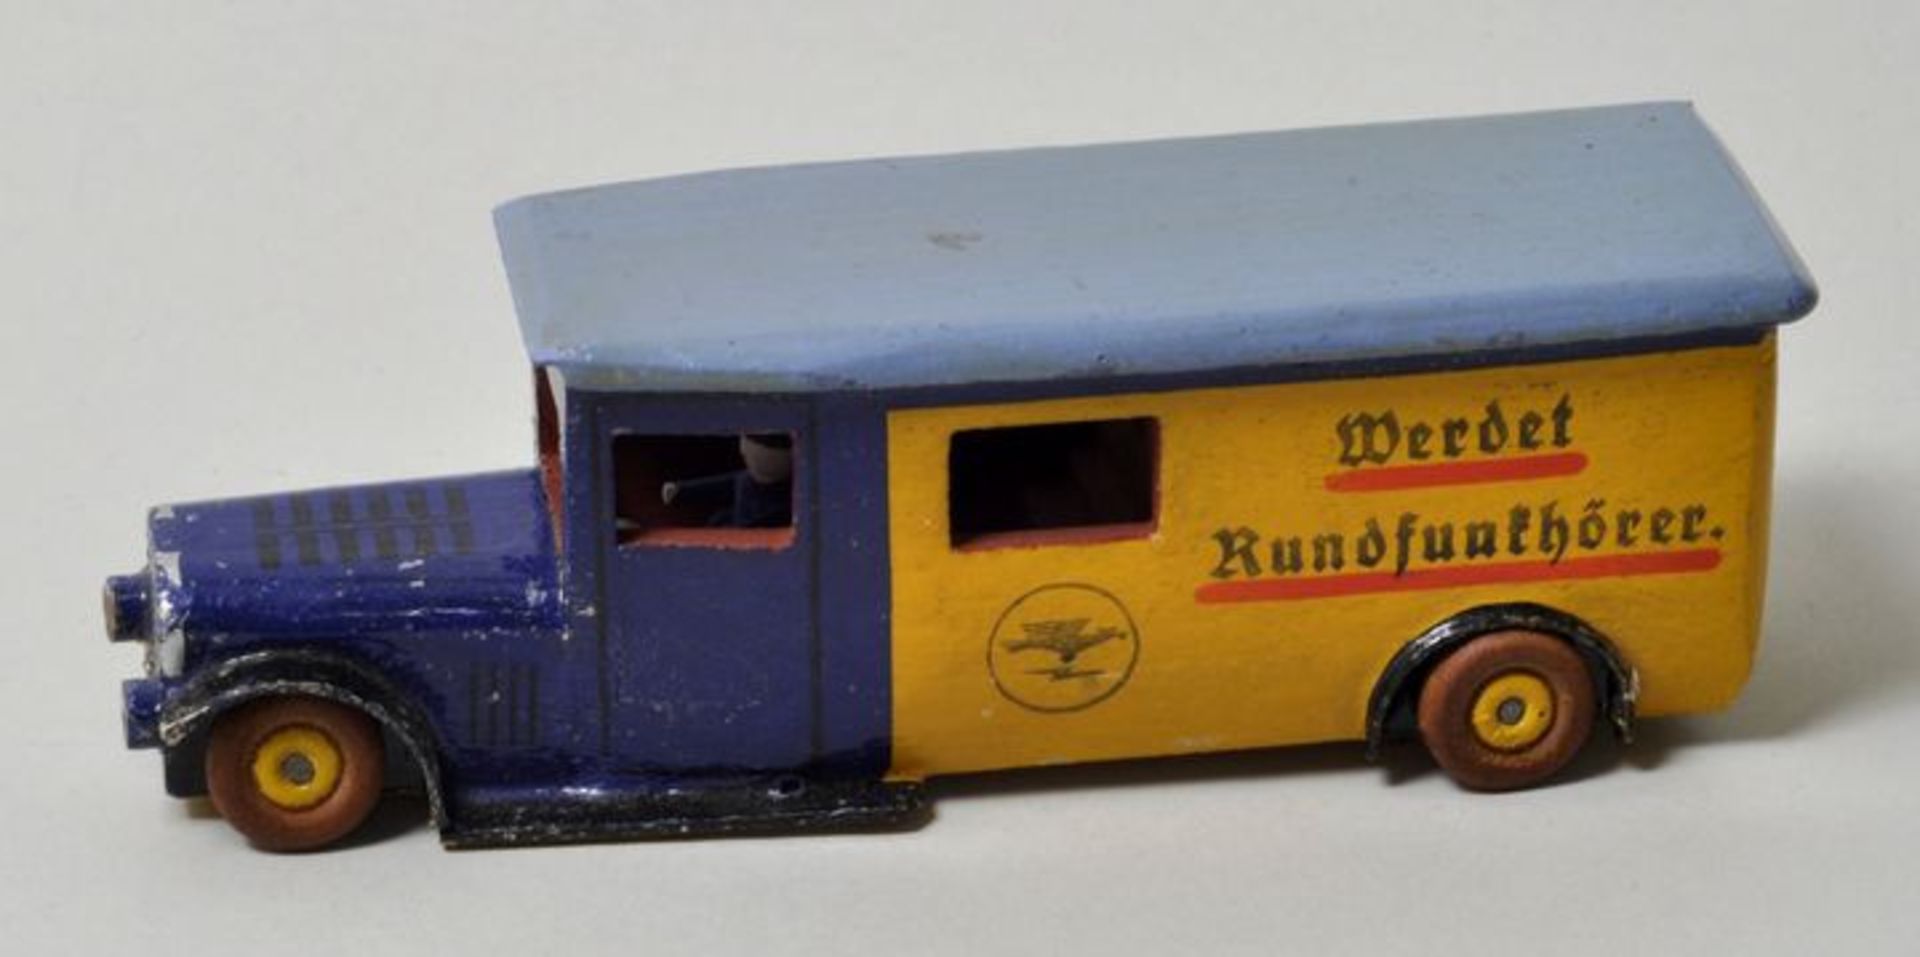 Miniatur-Spielzeugbus mit Werbeaufdruck, Erzgebirge, 1930er JahreHolz, farbig lackiert, Aufdruck "